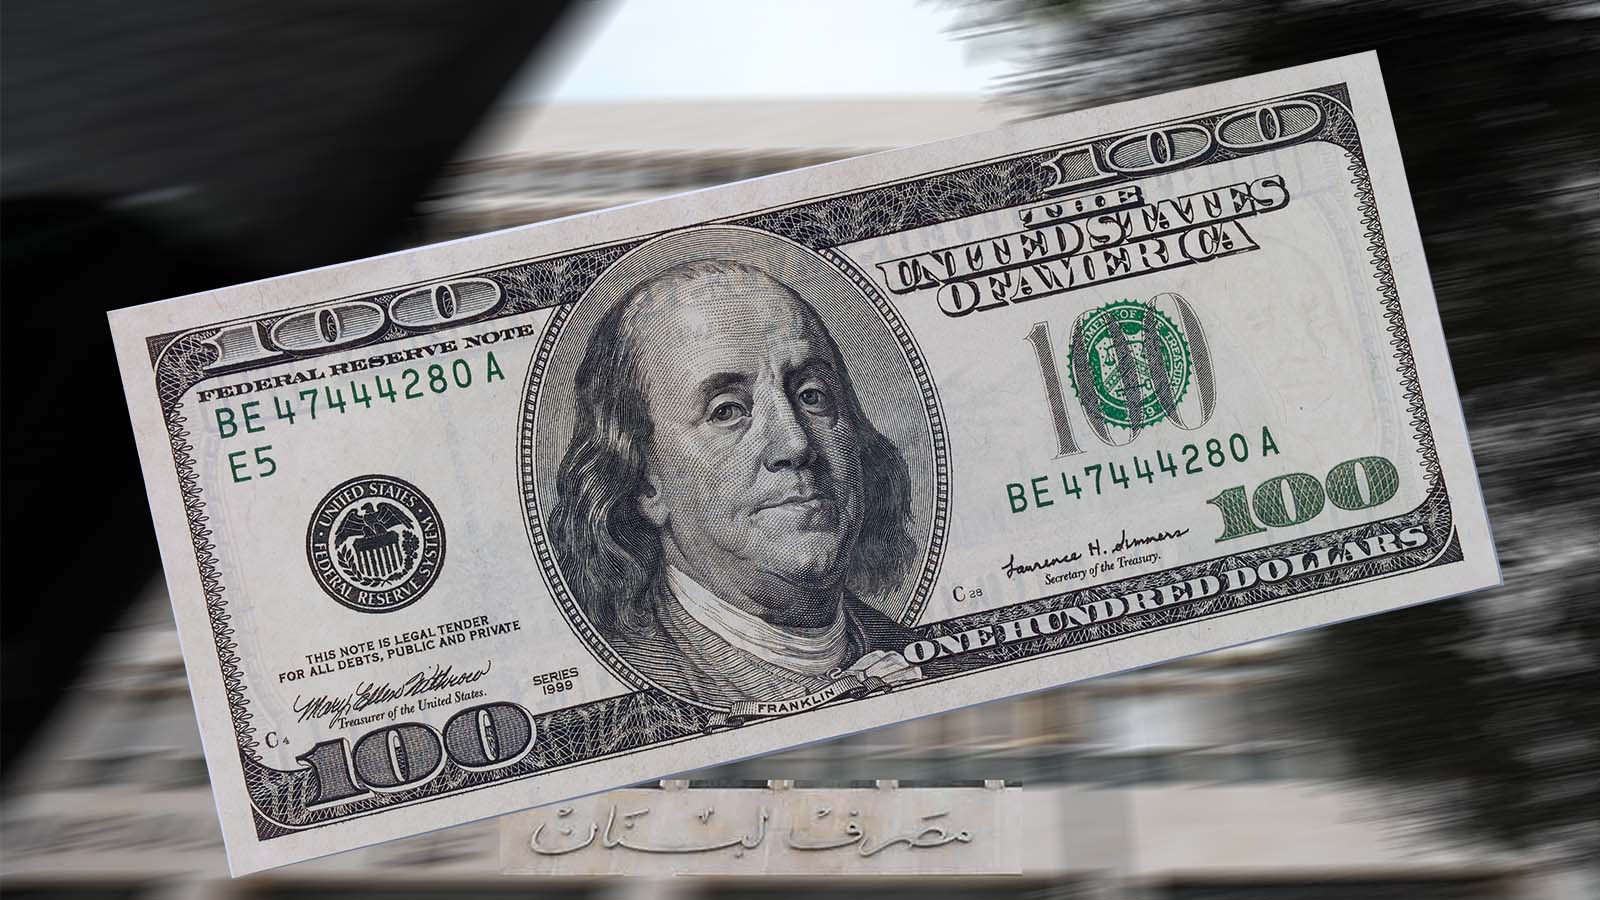 "أزمة" المئة دولار القديمة: الصرّافون يدعون لمقاضاة المصارف